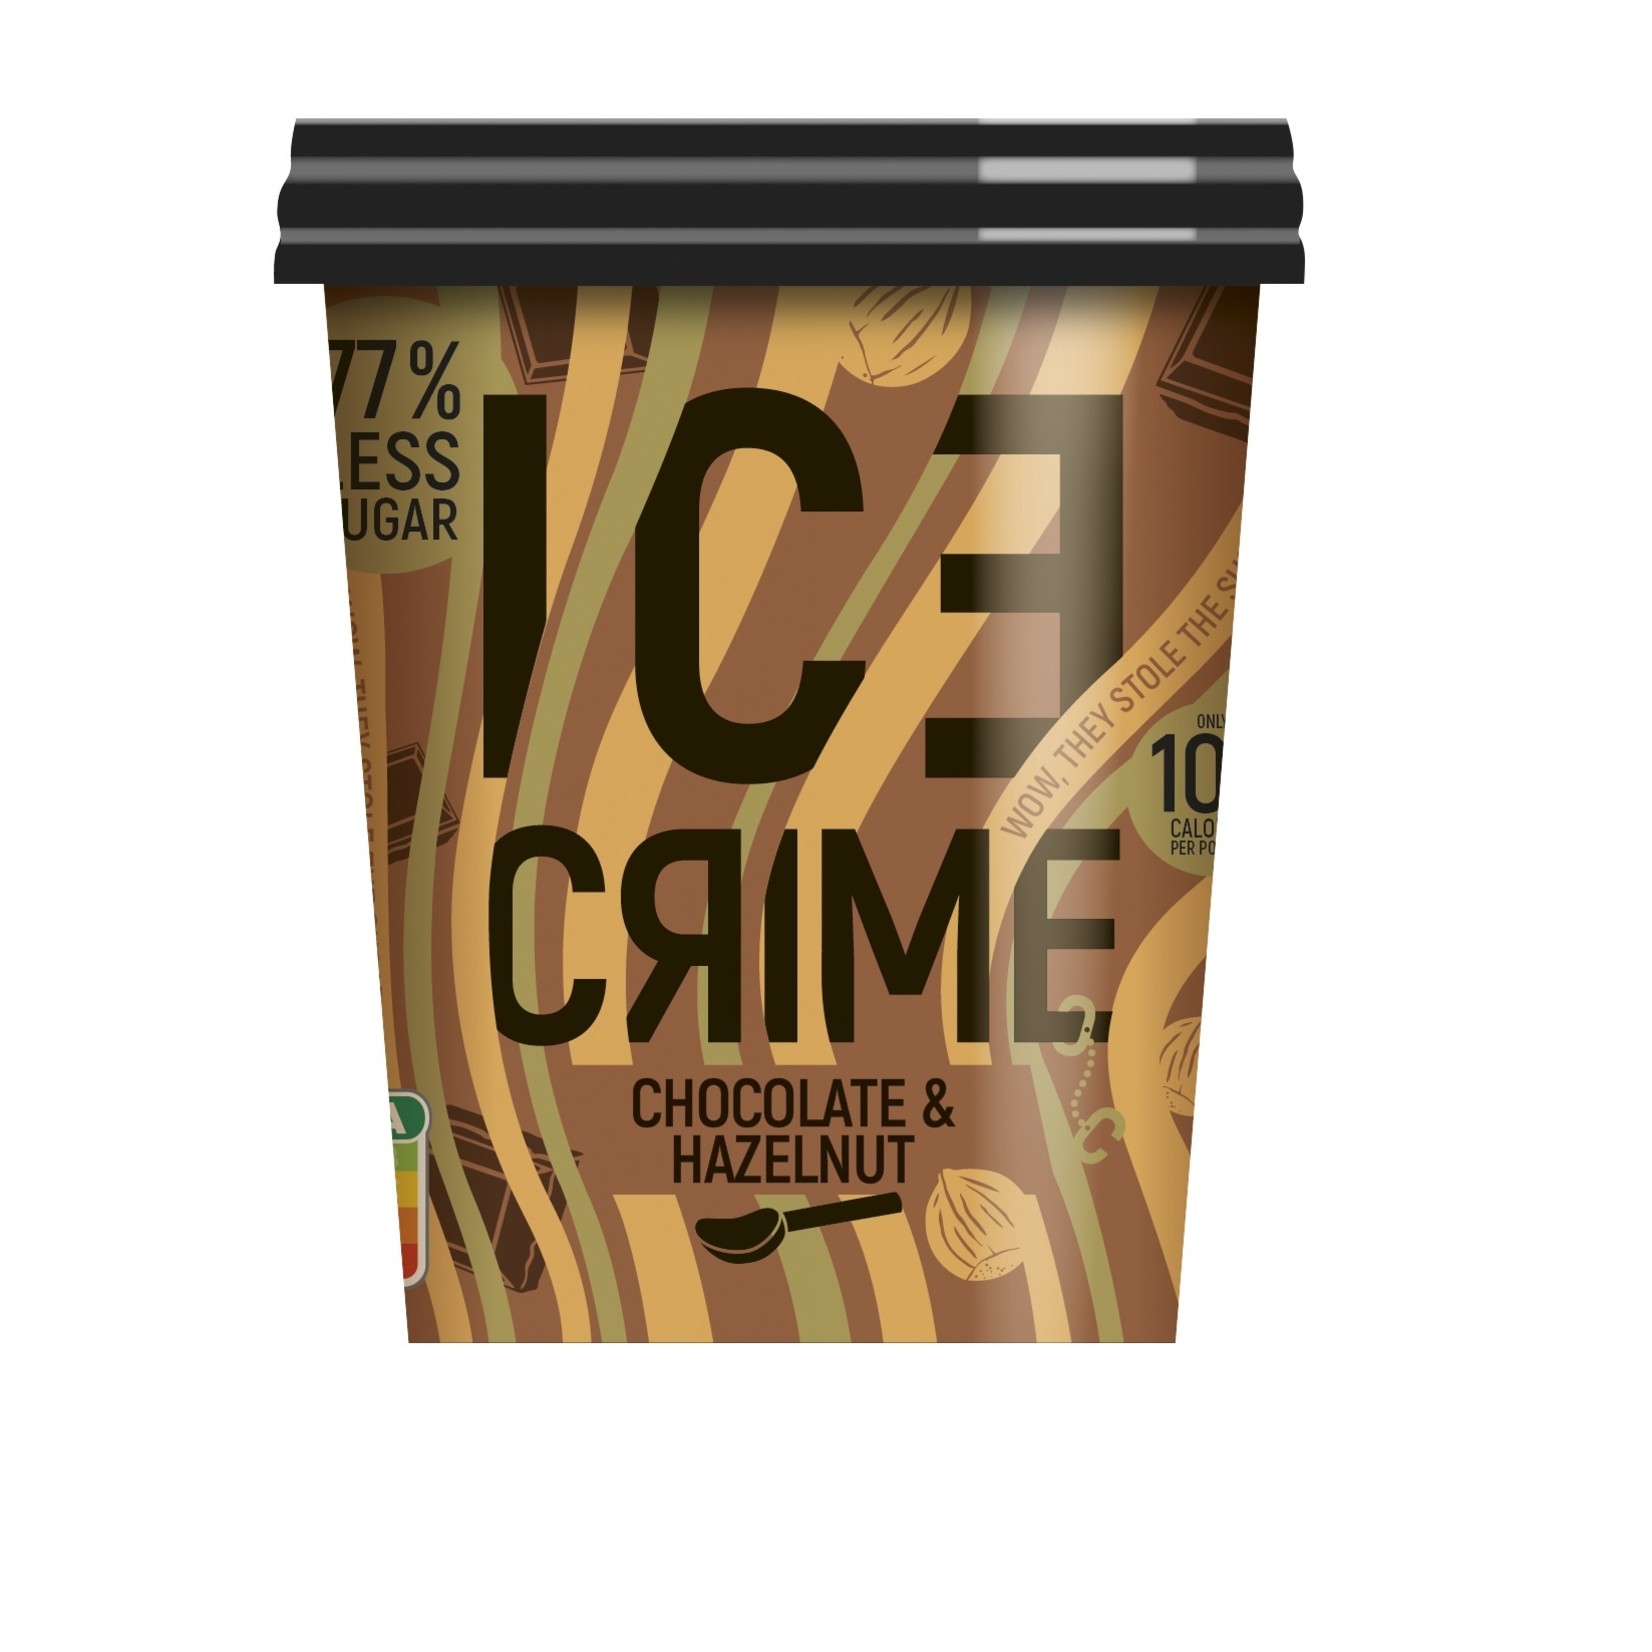 Ice Crime Chocolat & Hazelnut 475 ml - 77% Less Sugar